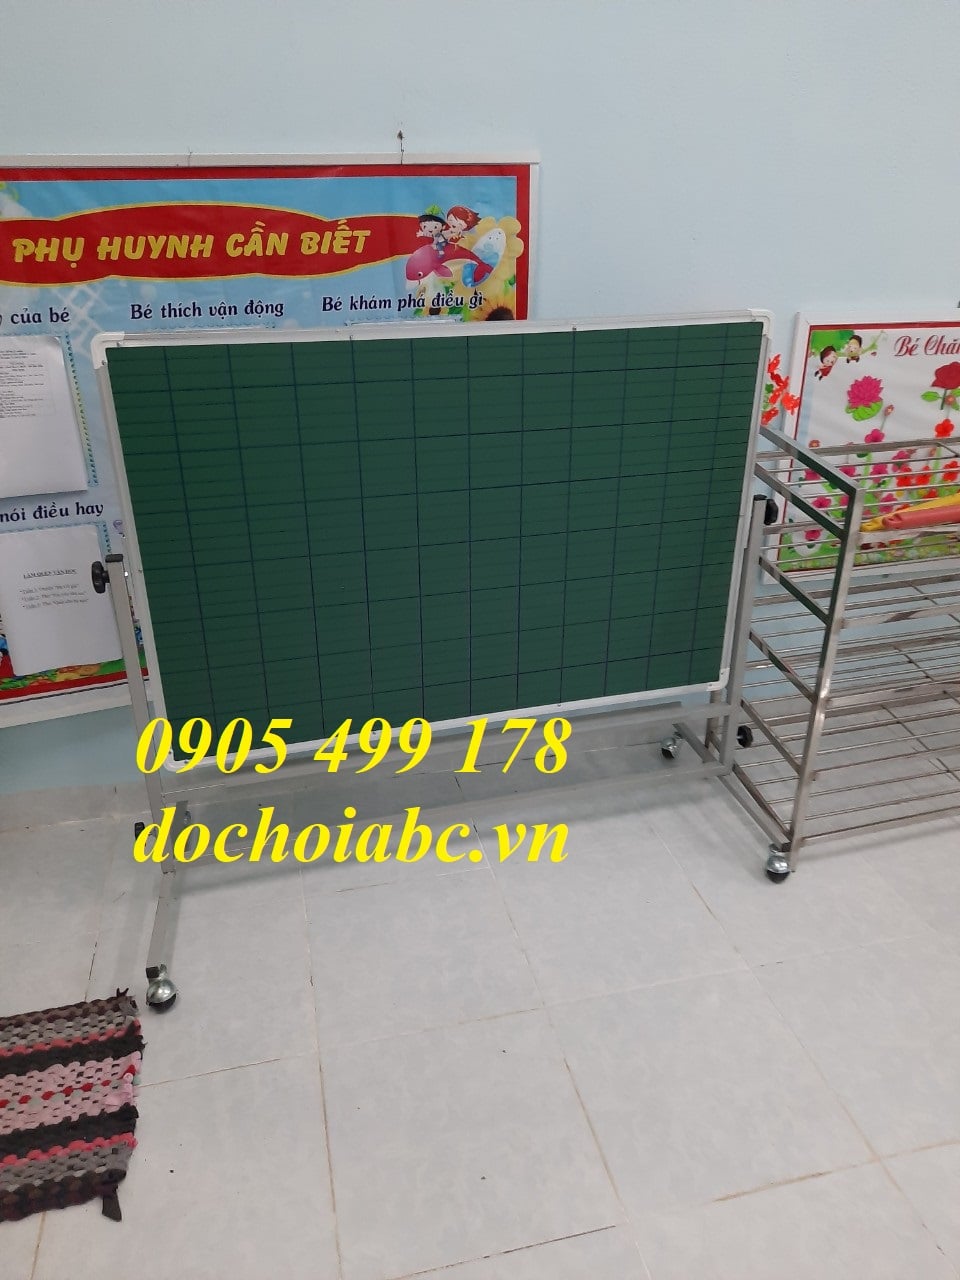 Bảng Từ 2 Mặt Mầm Non - Chuyên cung cấp các thiết bị mầm non giá rẻ tại Đà Nẵng